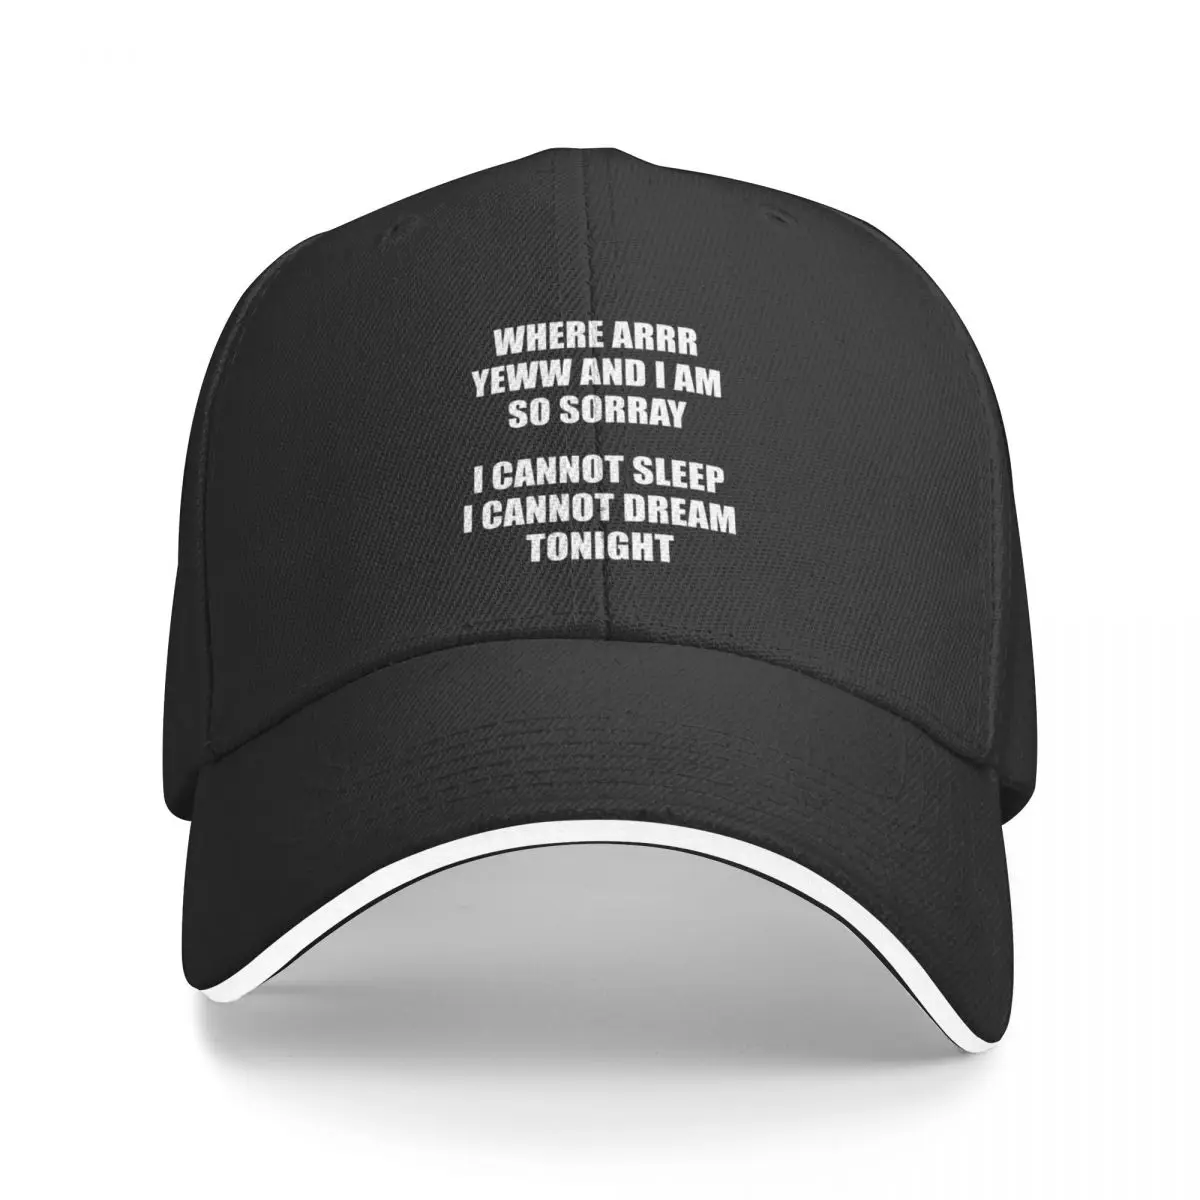 

Funny I Miss You - Blink182 Inspired Meme Baseball Cap Sunhat New In Hat Custom Cap Women's Men's